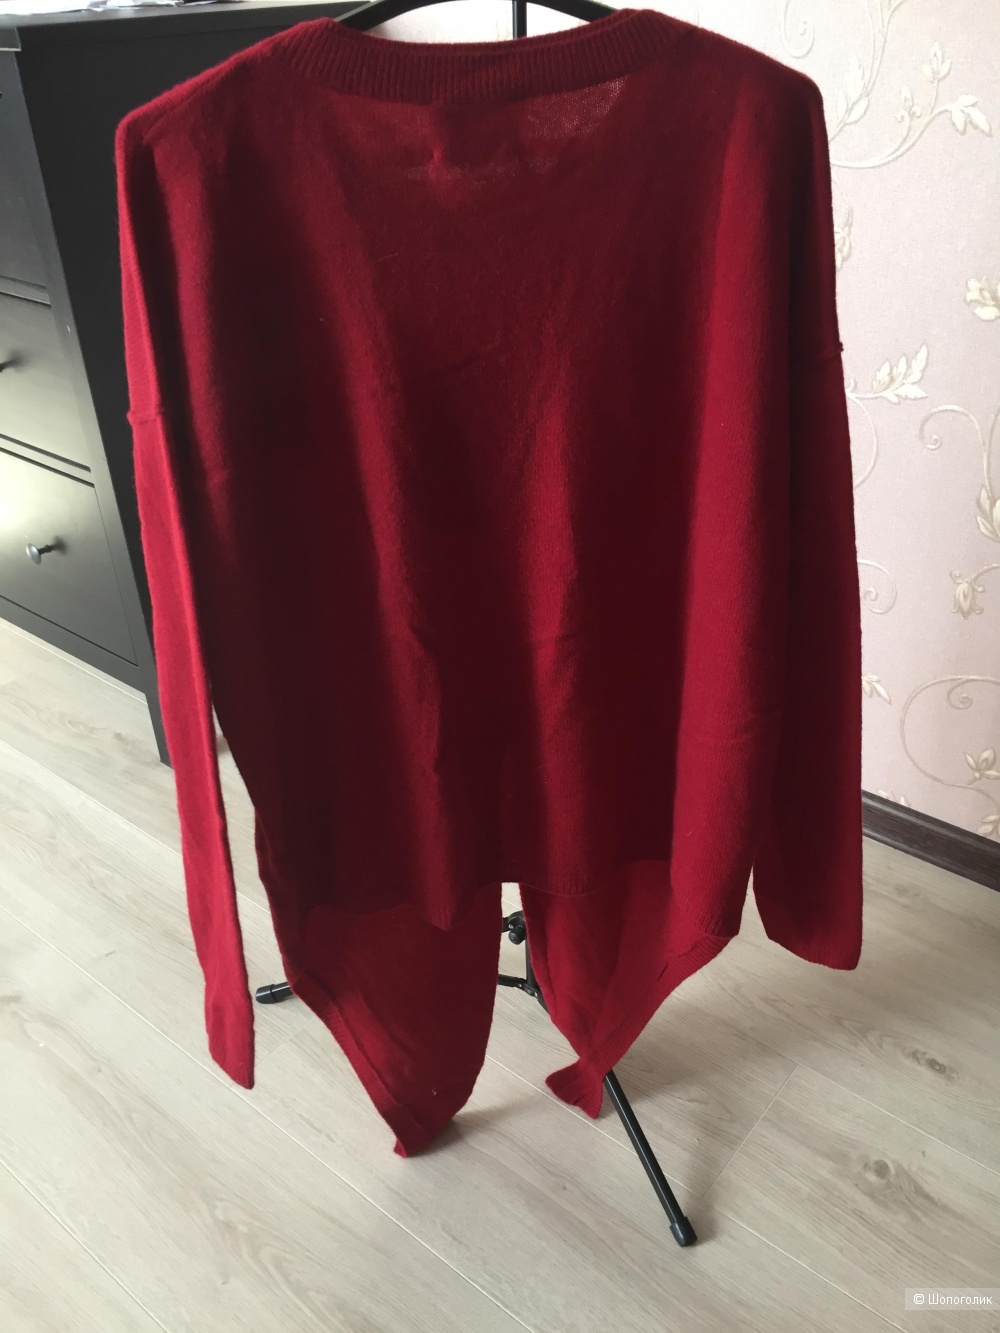 Кашемировый свитер Charli, размер S